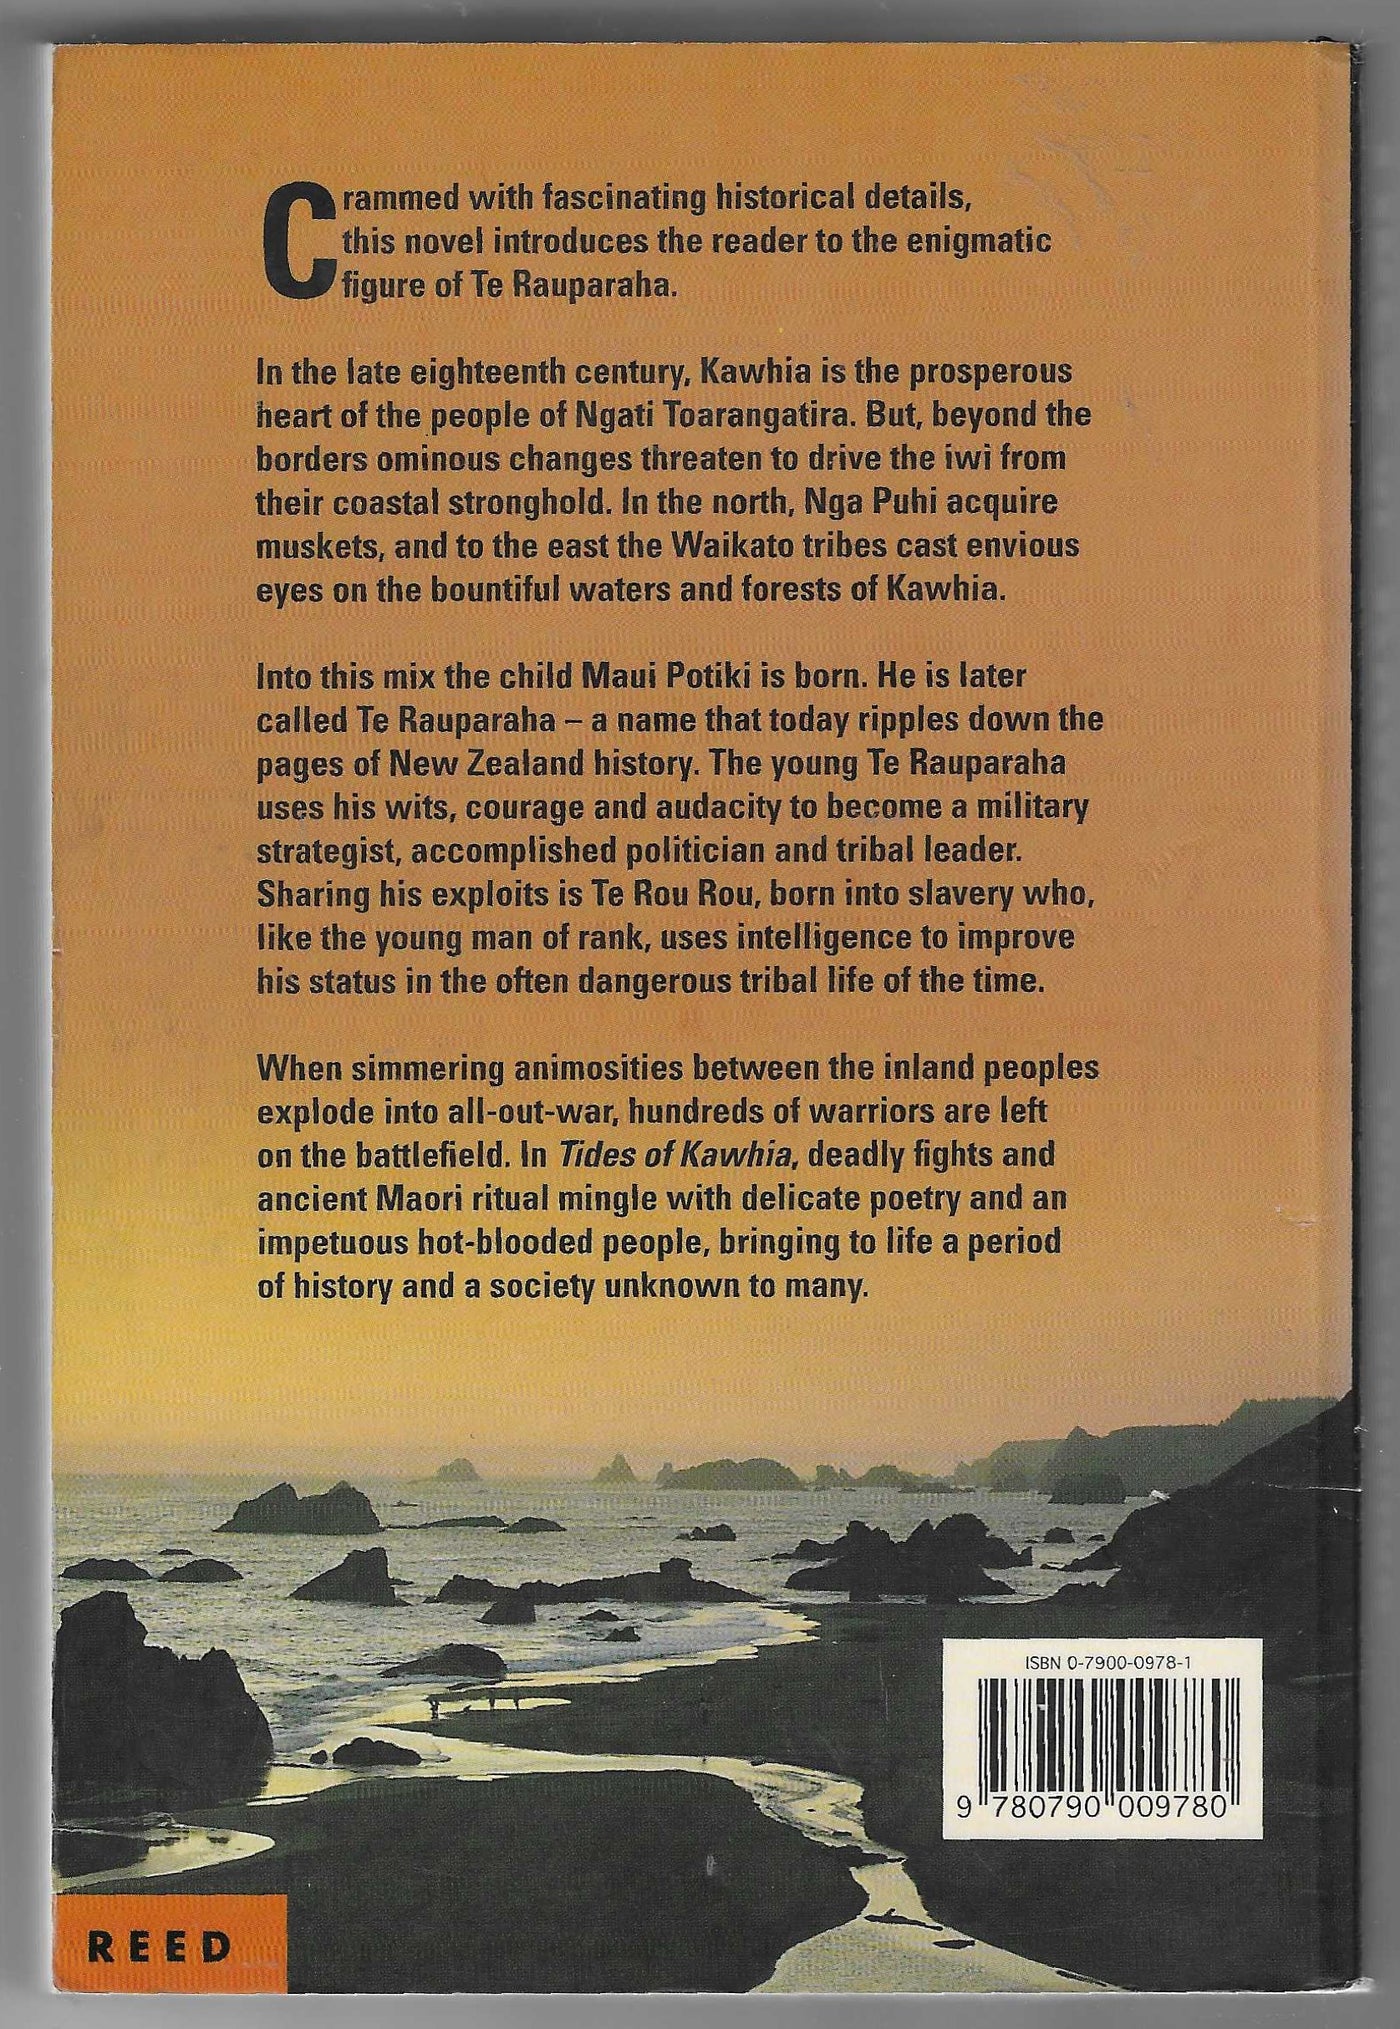 Tides of Kawhia: A Novel